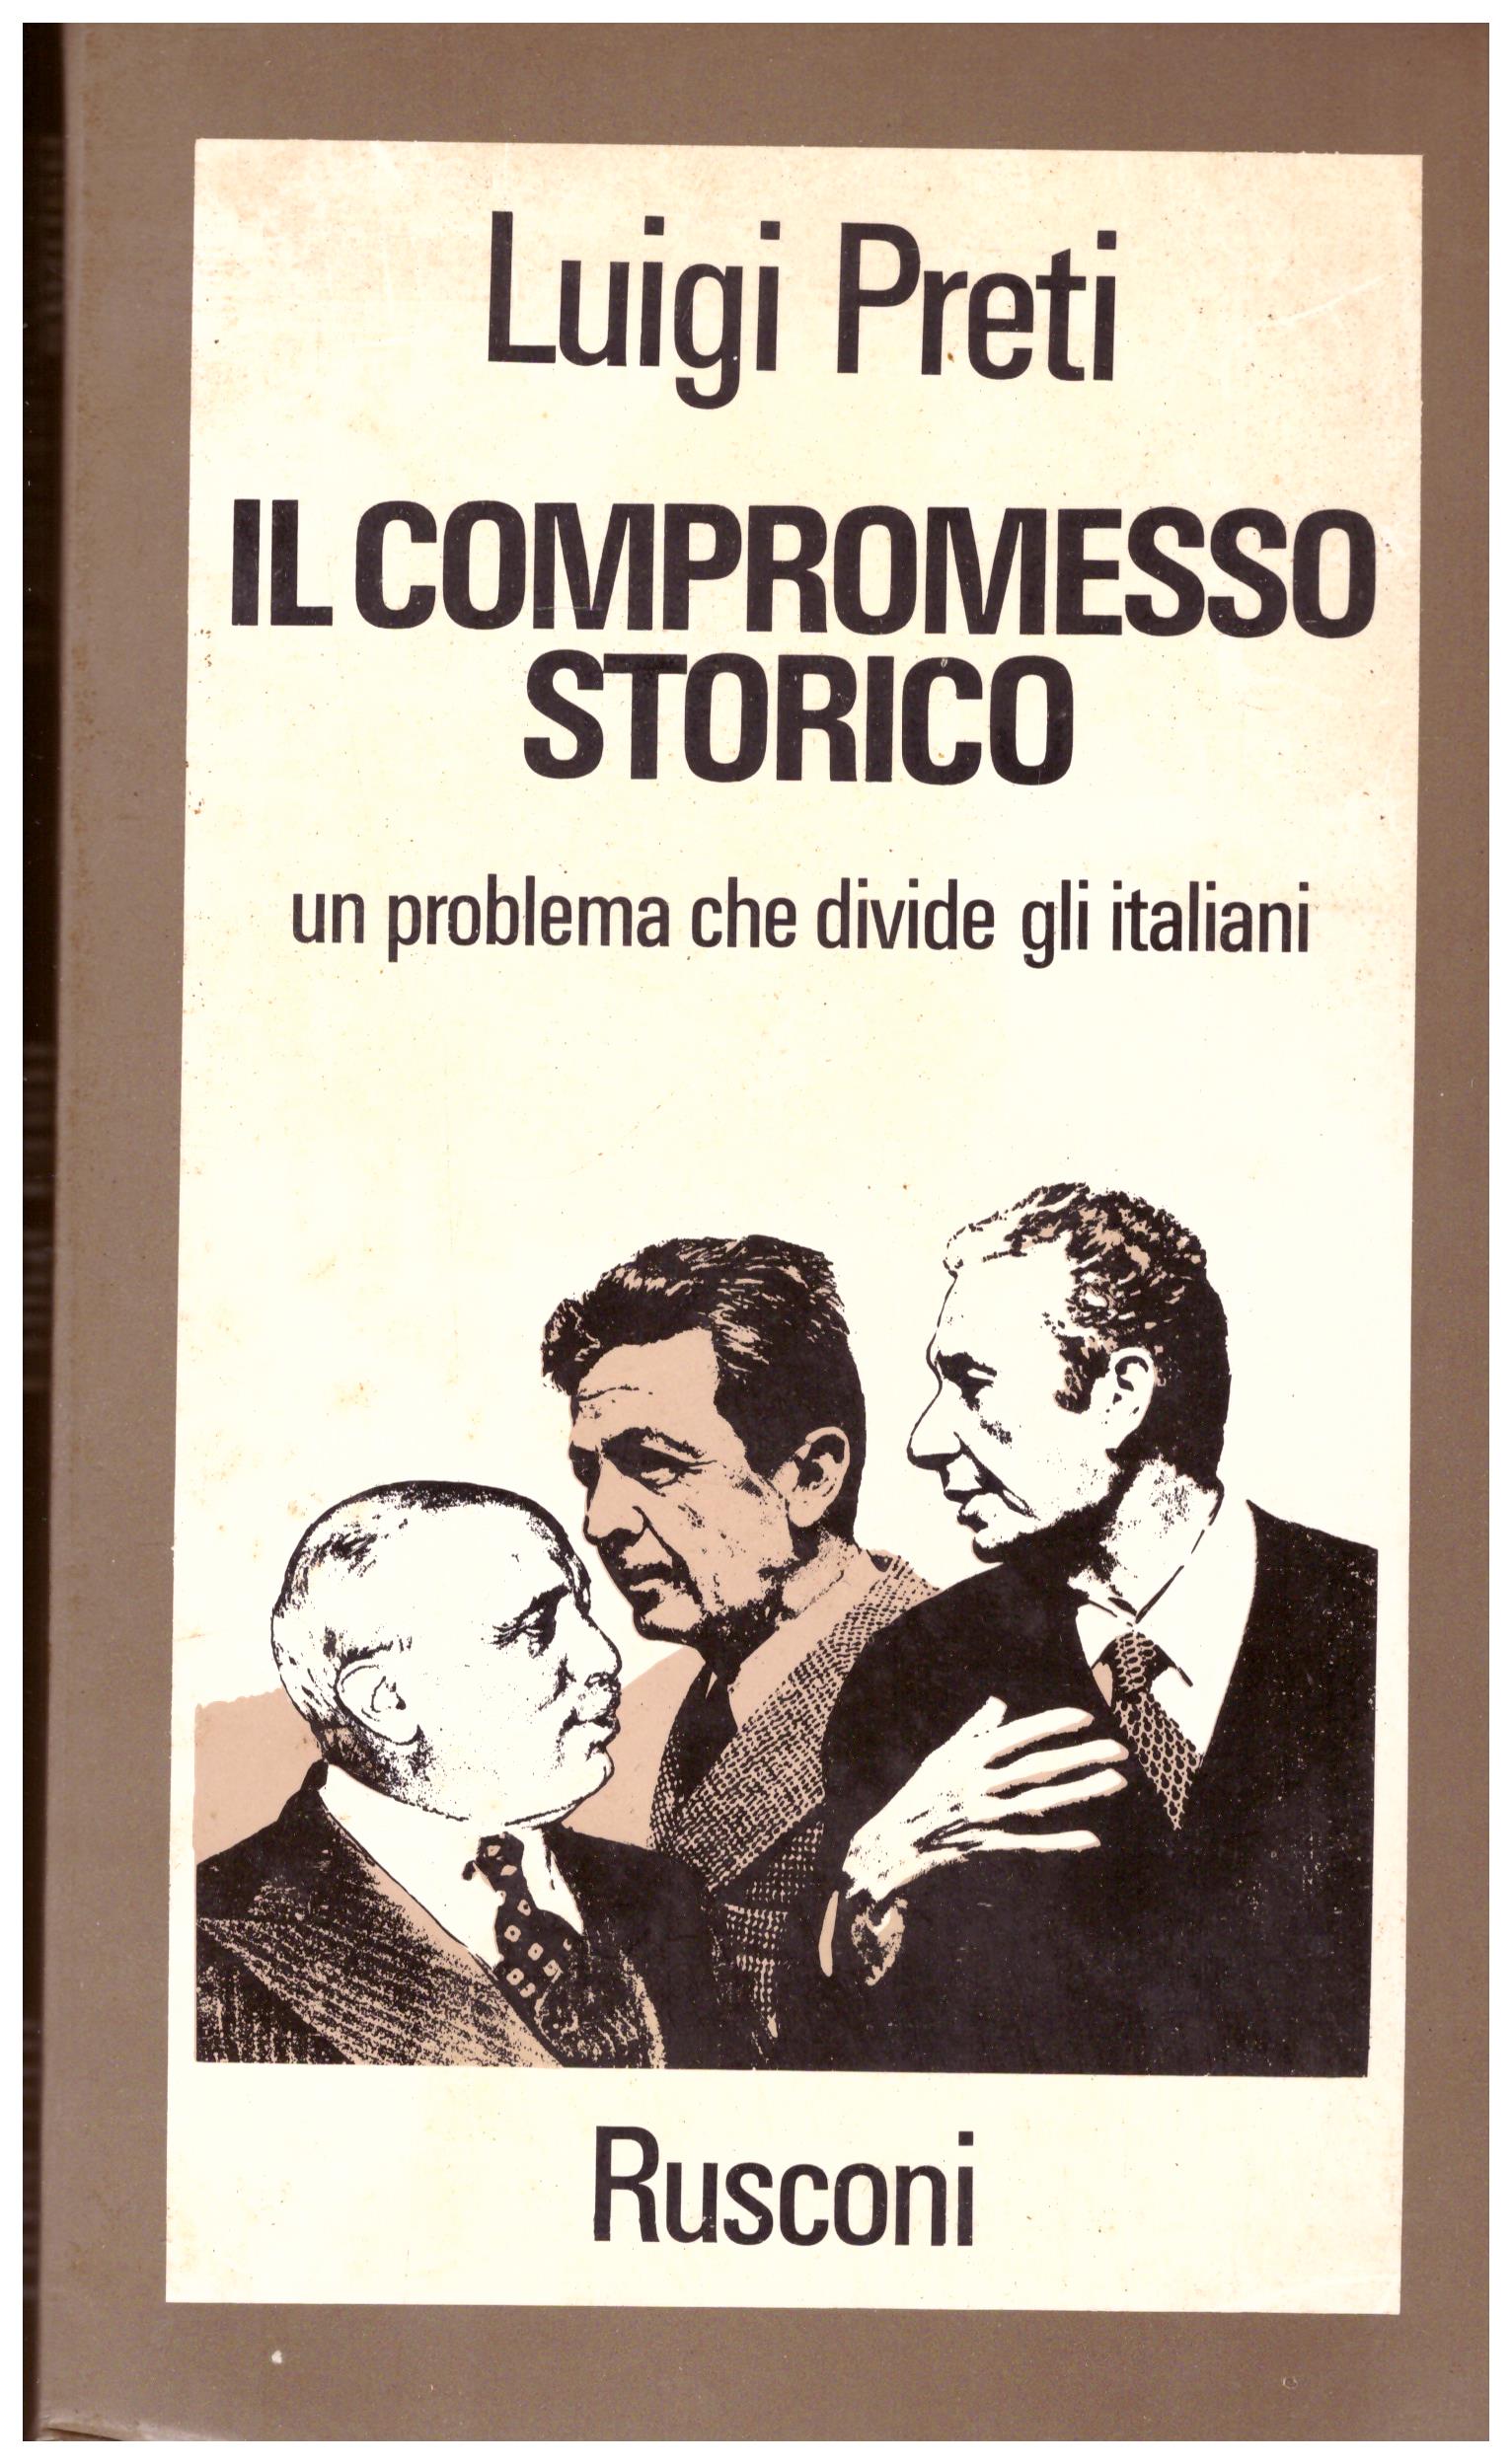 Titolo: Il compromesso storico Autore: Luigi Preti  Editore: Rusconi, 1975